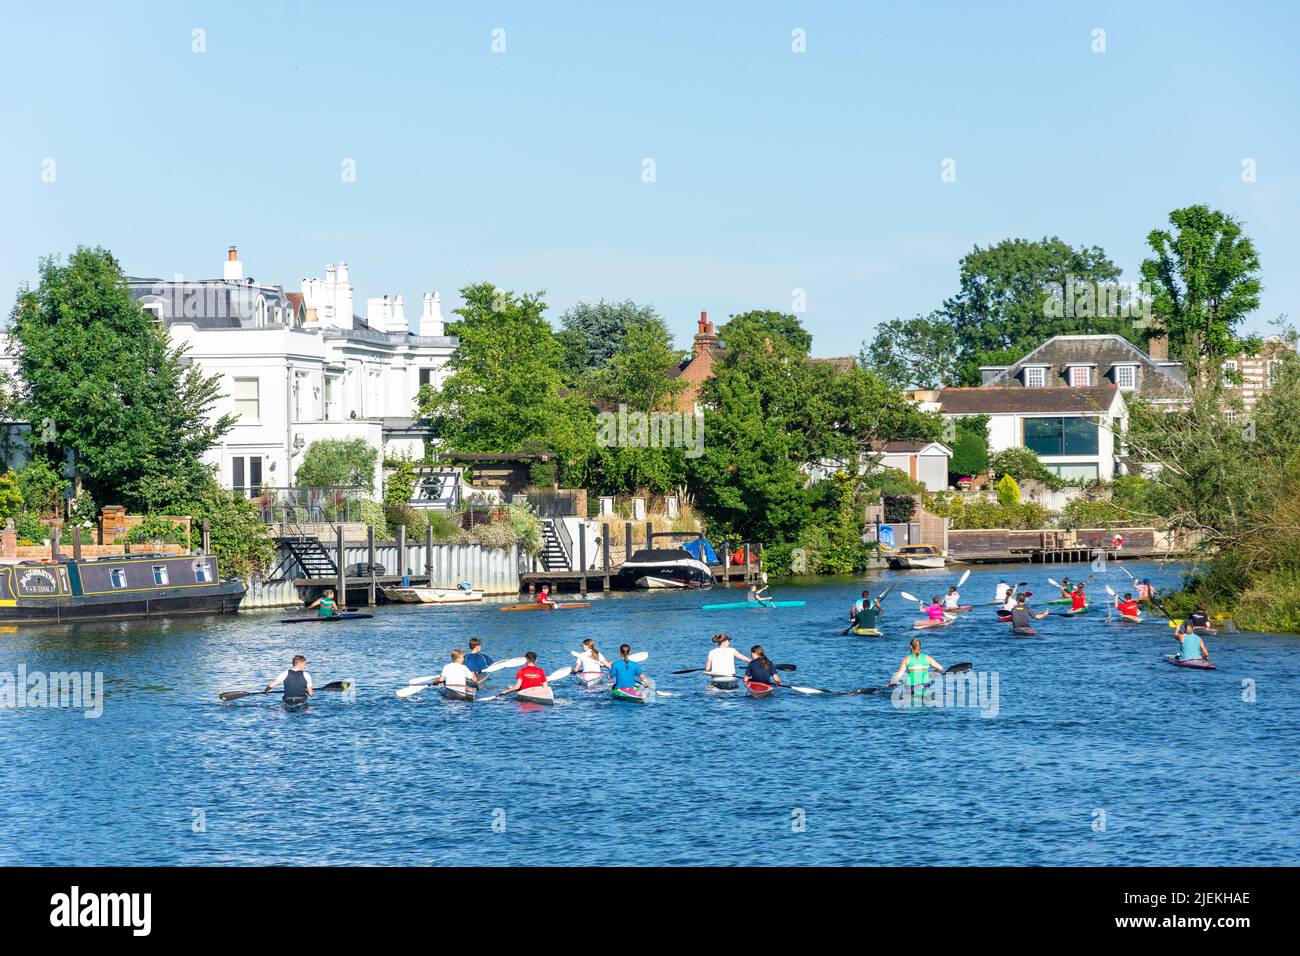 Groupe de kayakistes sur la Tamise, Shepperton, Surrey, Angleterre, Royaume-Uni Banque D'Images